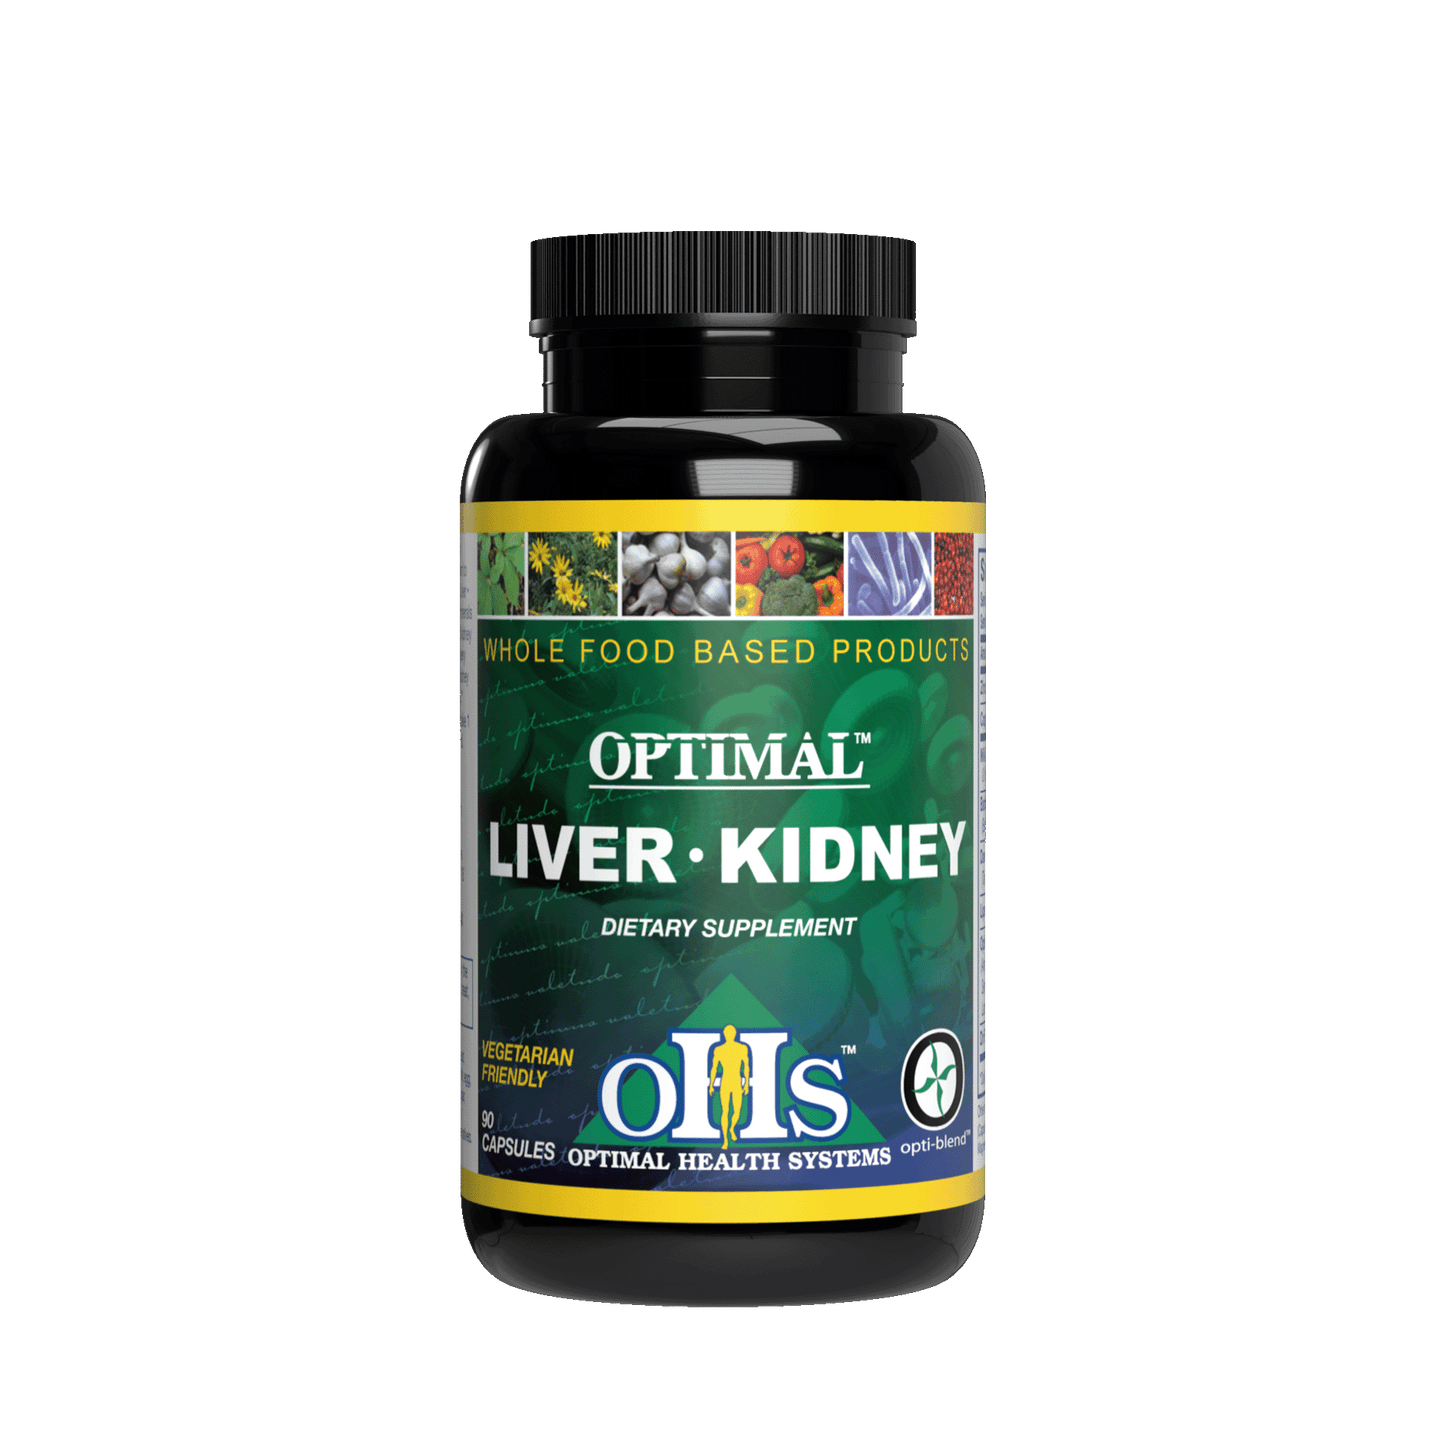 Image of a bottle of Optimal Liver Kidney.